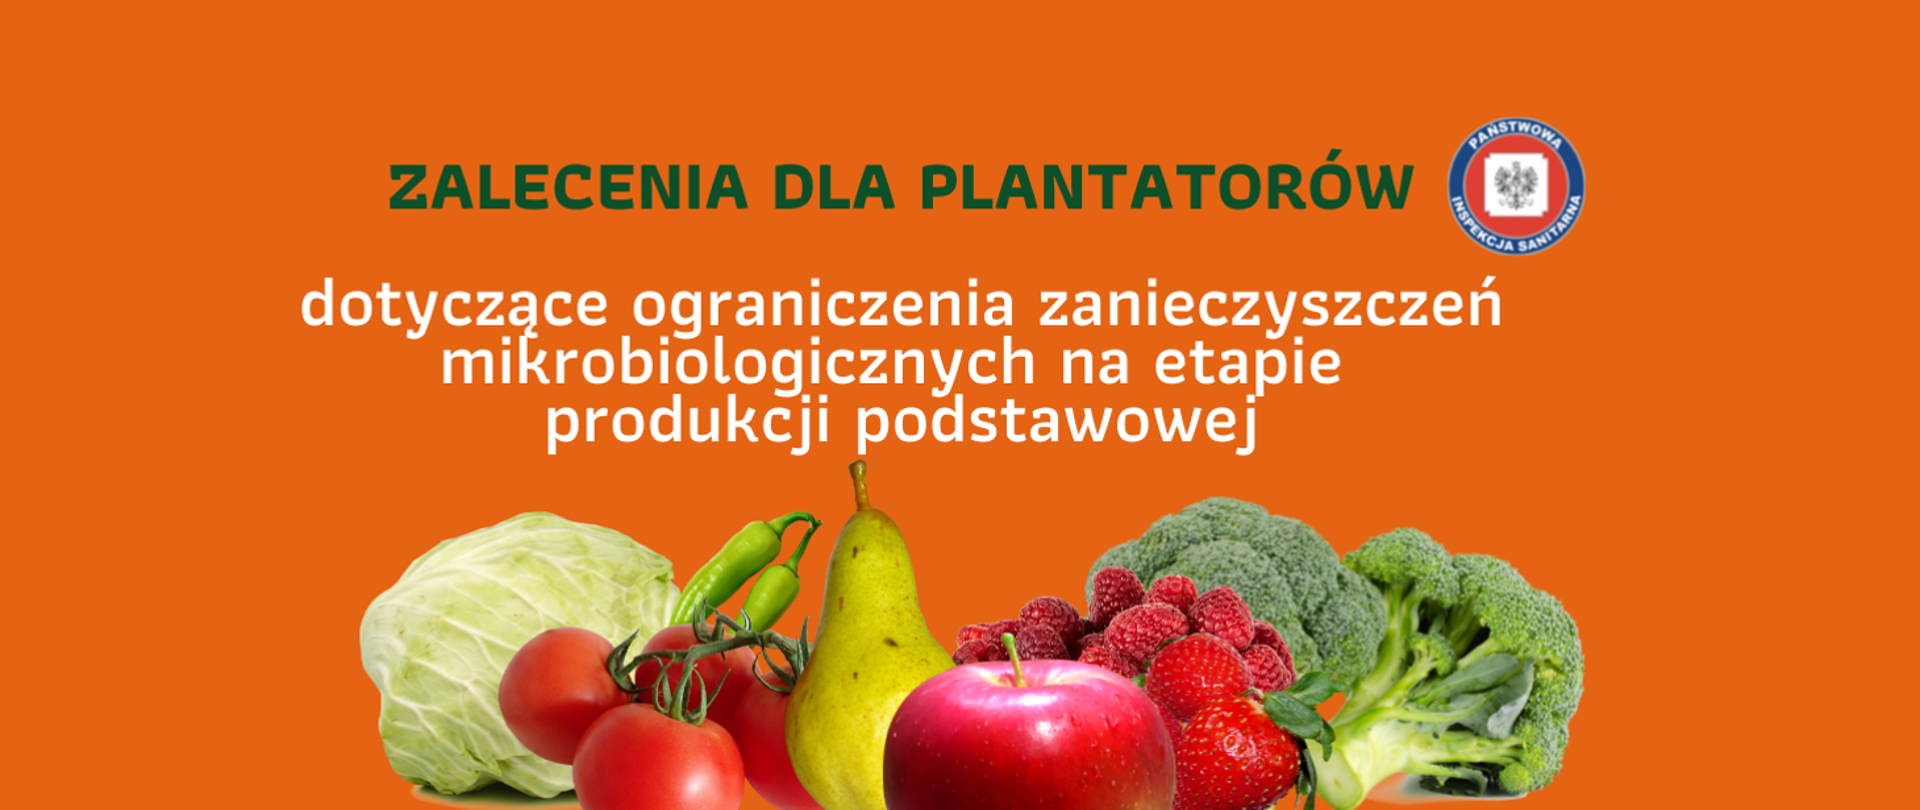 Zalecenia dla plantatorów dotyczące ograniczenia zanieczyszczeń mikrobiologicznych na etapie produkcji podstawowej - logo